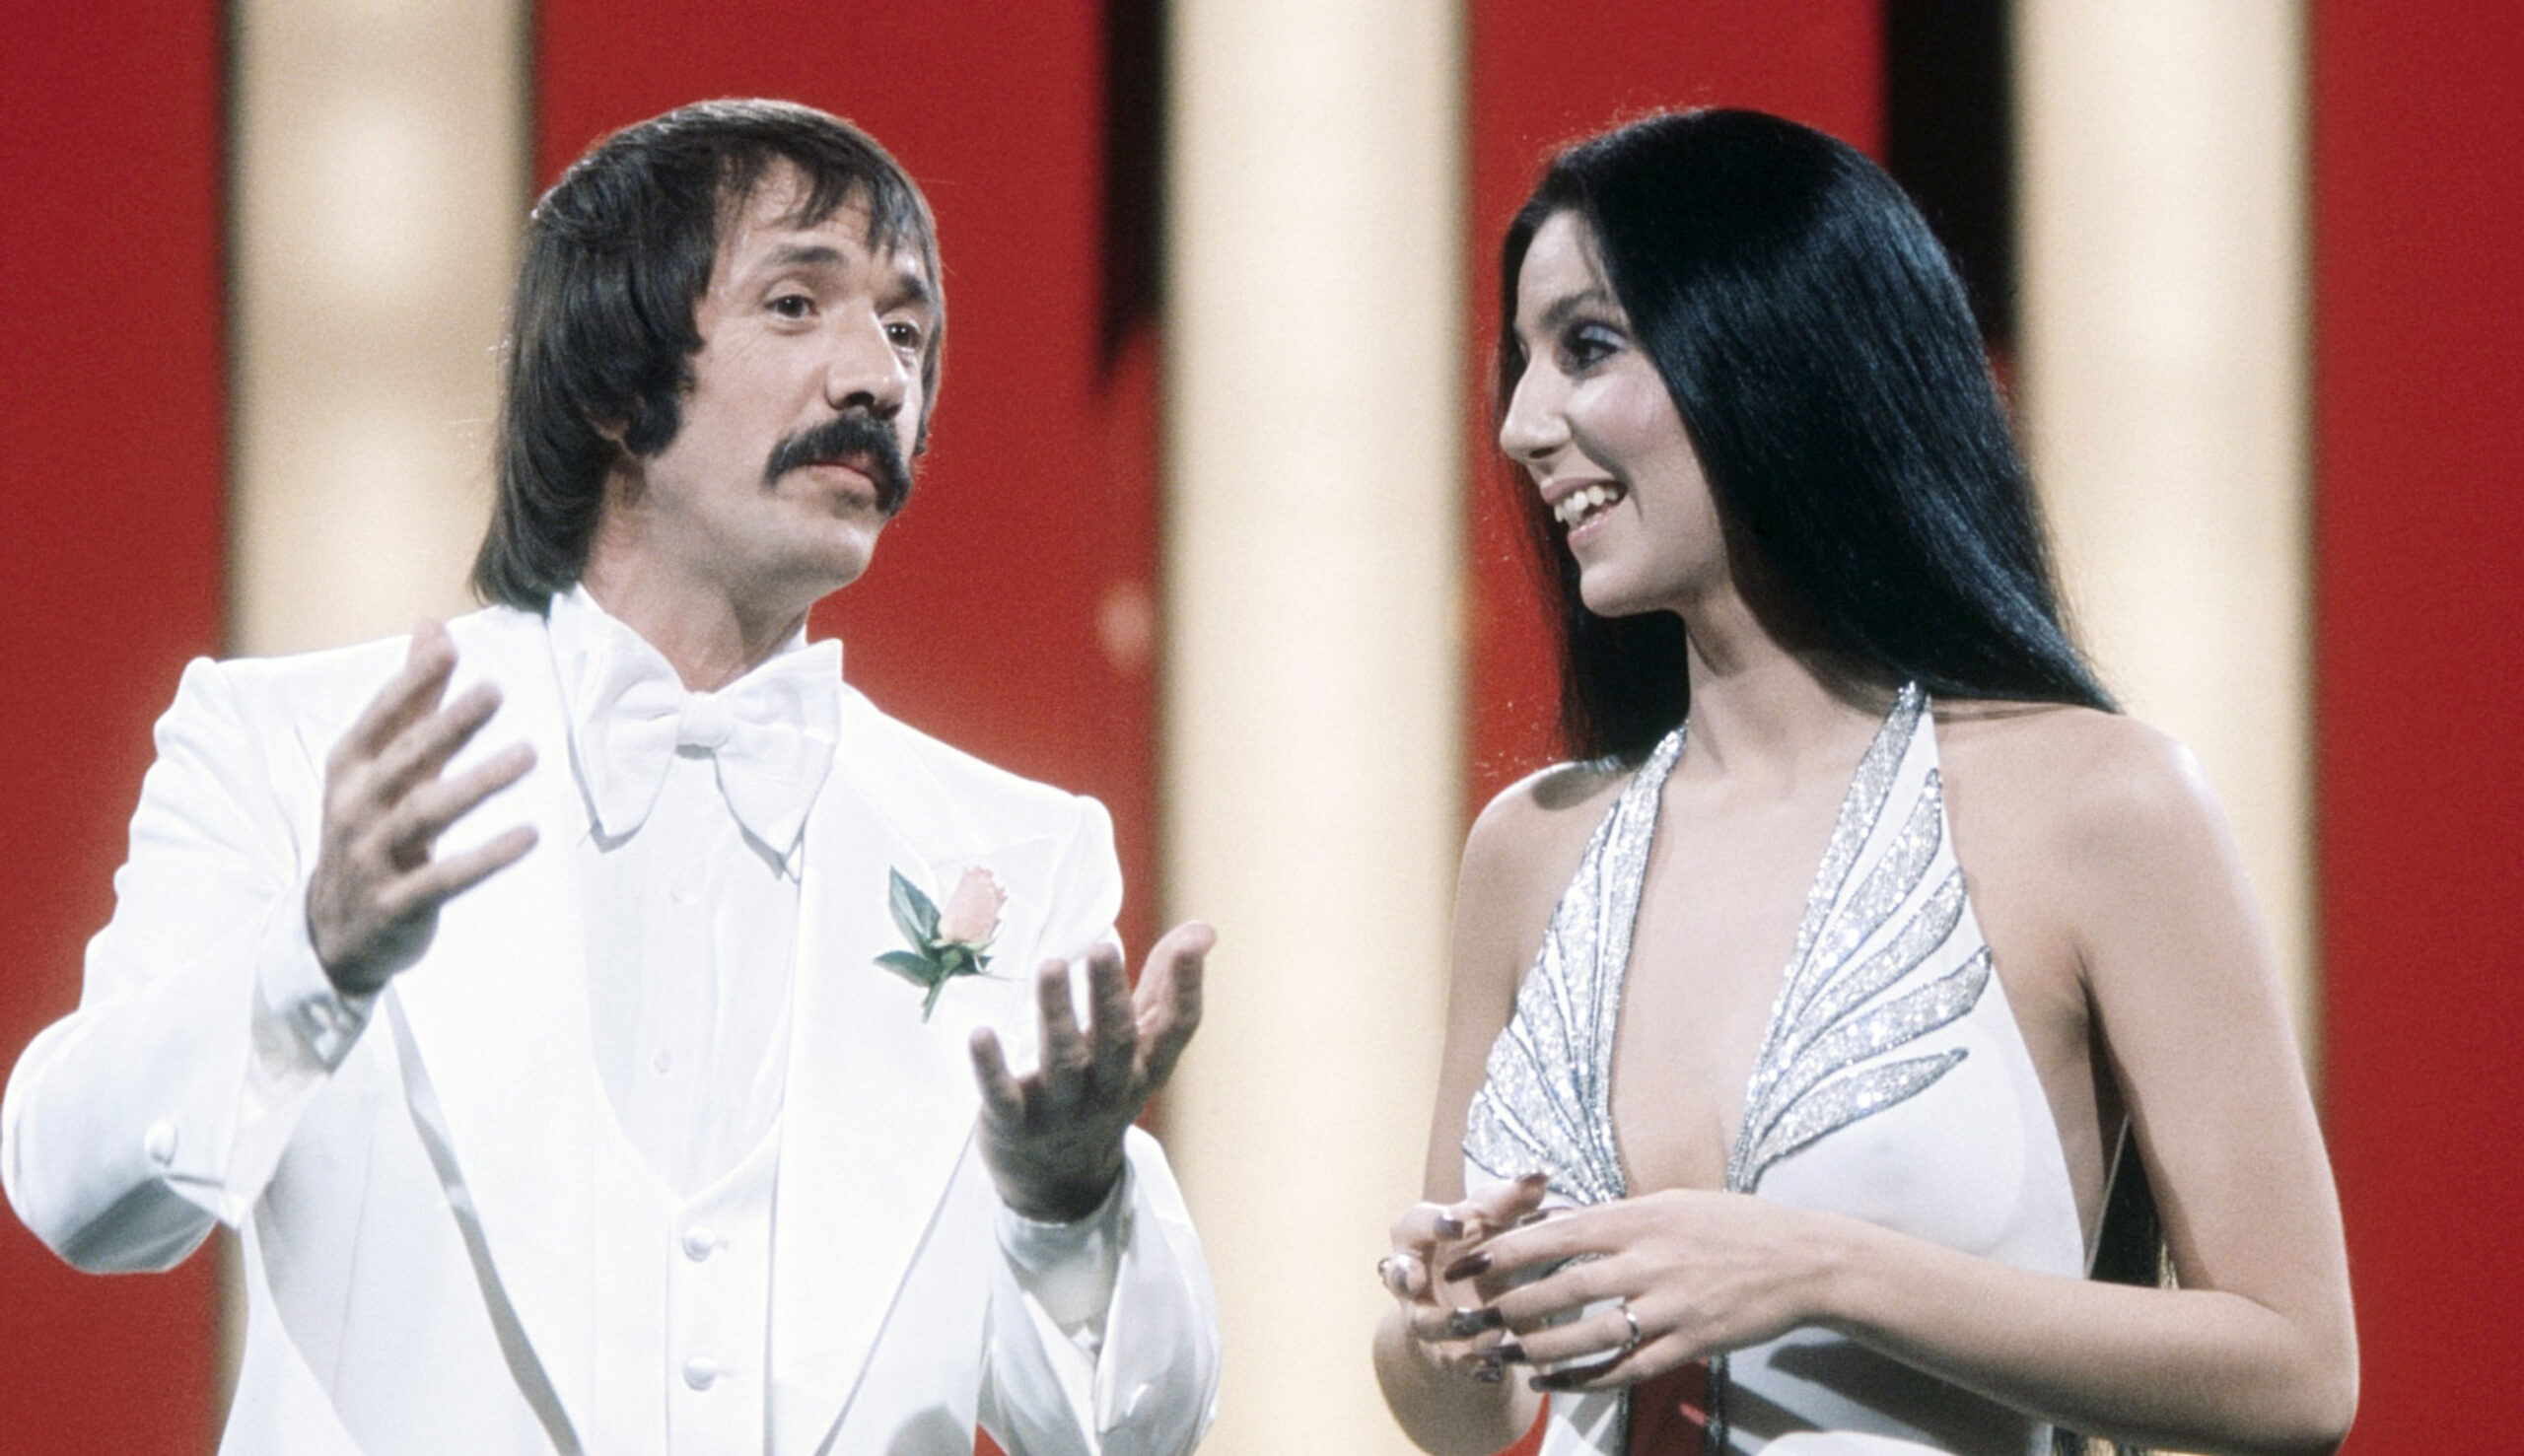 THE SONNY AND CHER SHOW, Sonny & Cher, from left: Sonny Bono, Cher, (June 5, 1976)